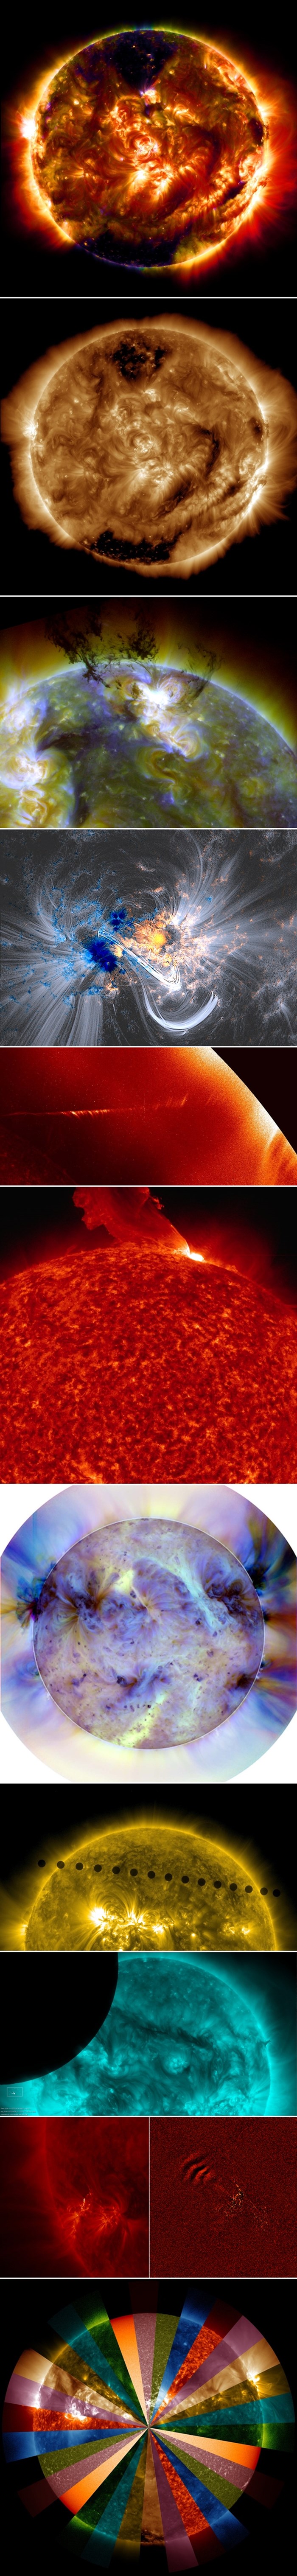 Galerija: Najbolje fotke Sunca ikad snimljene